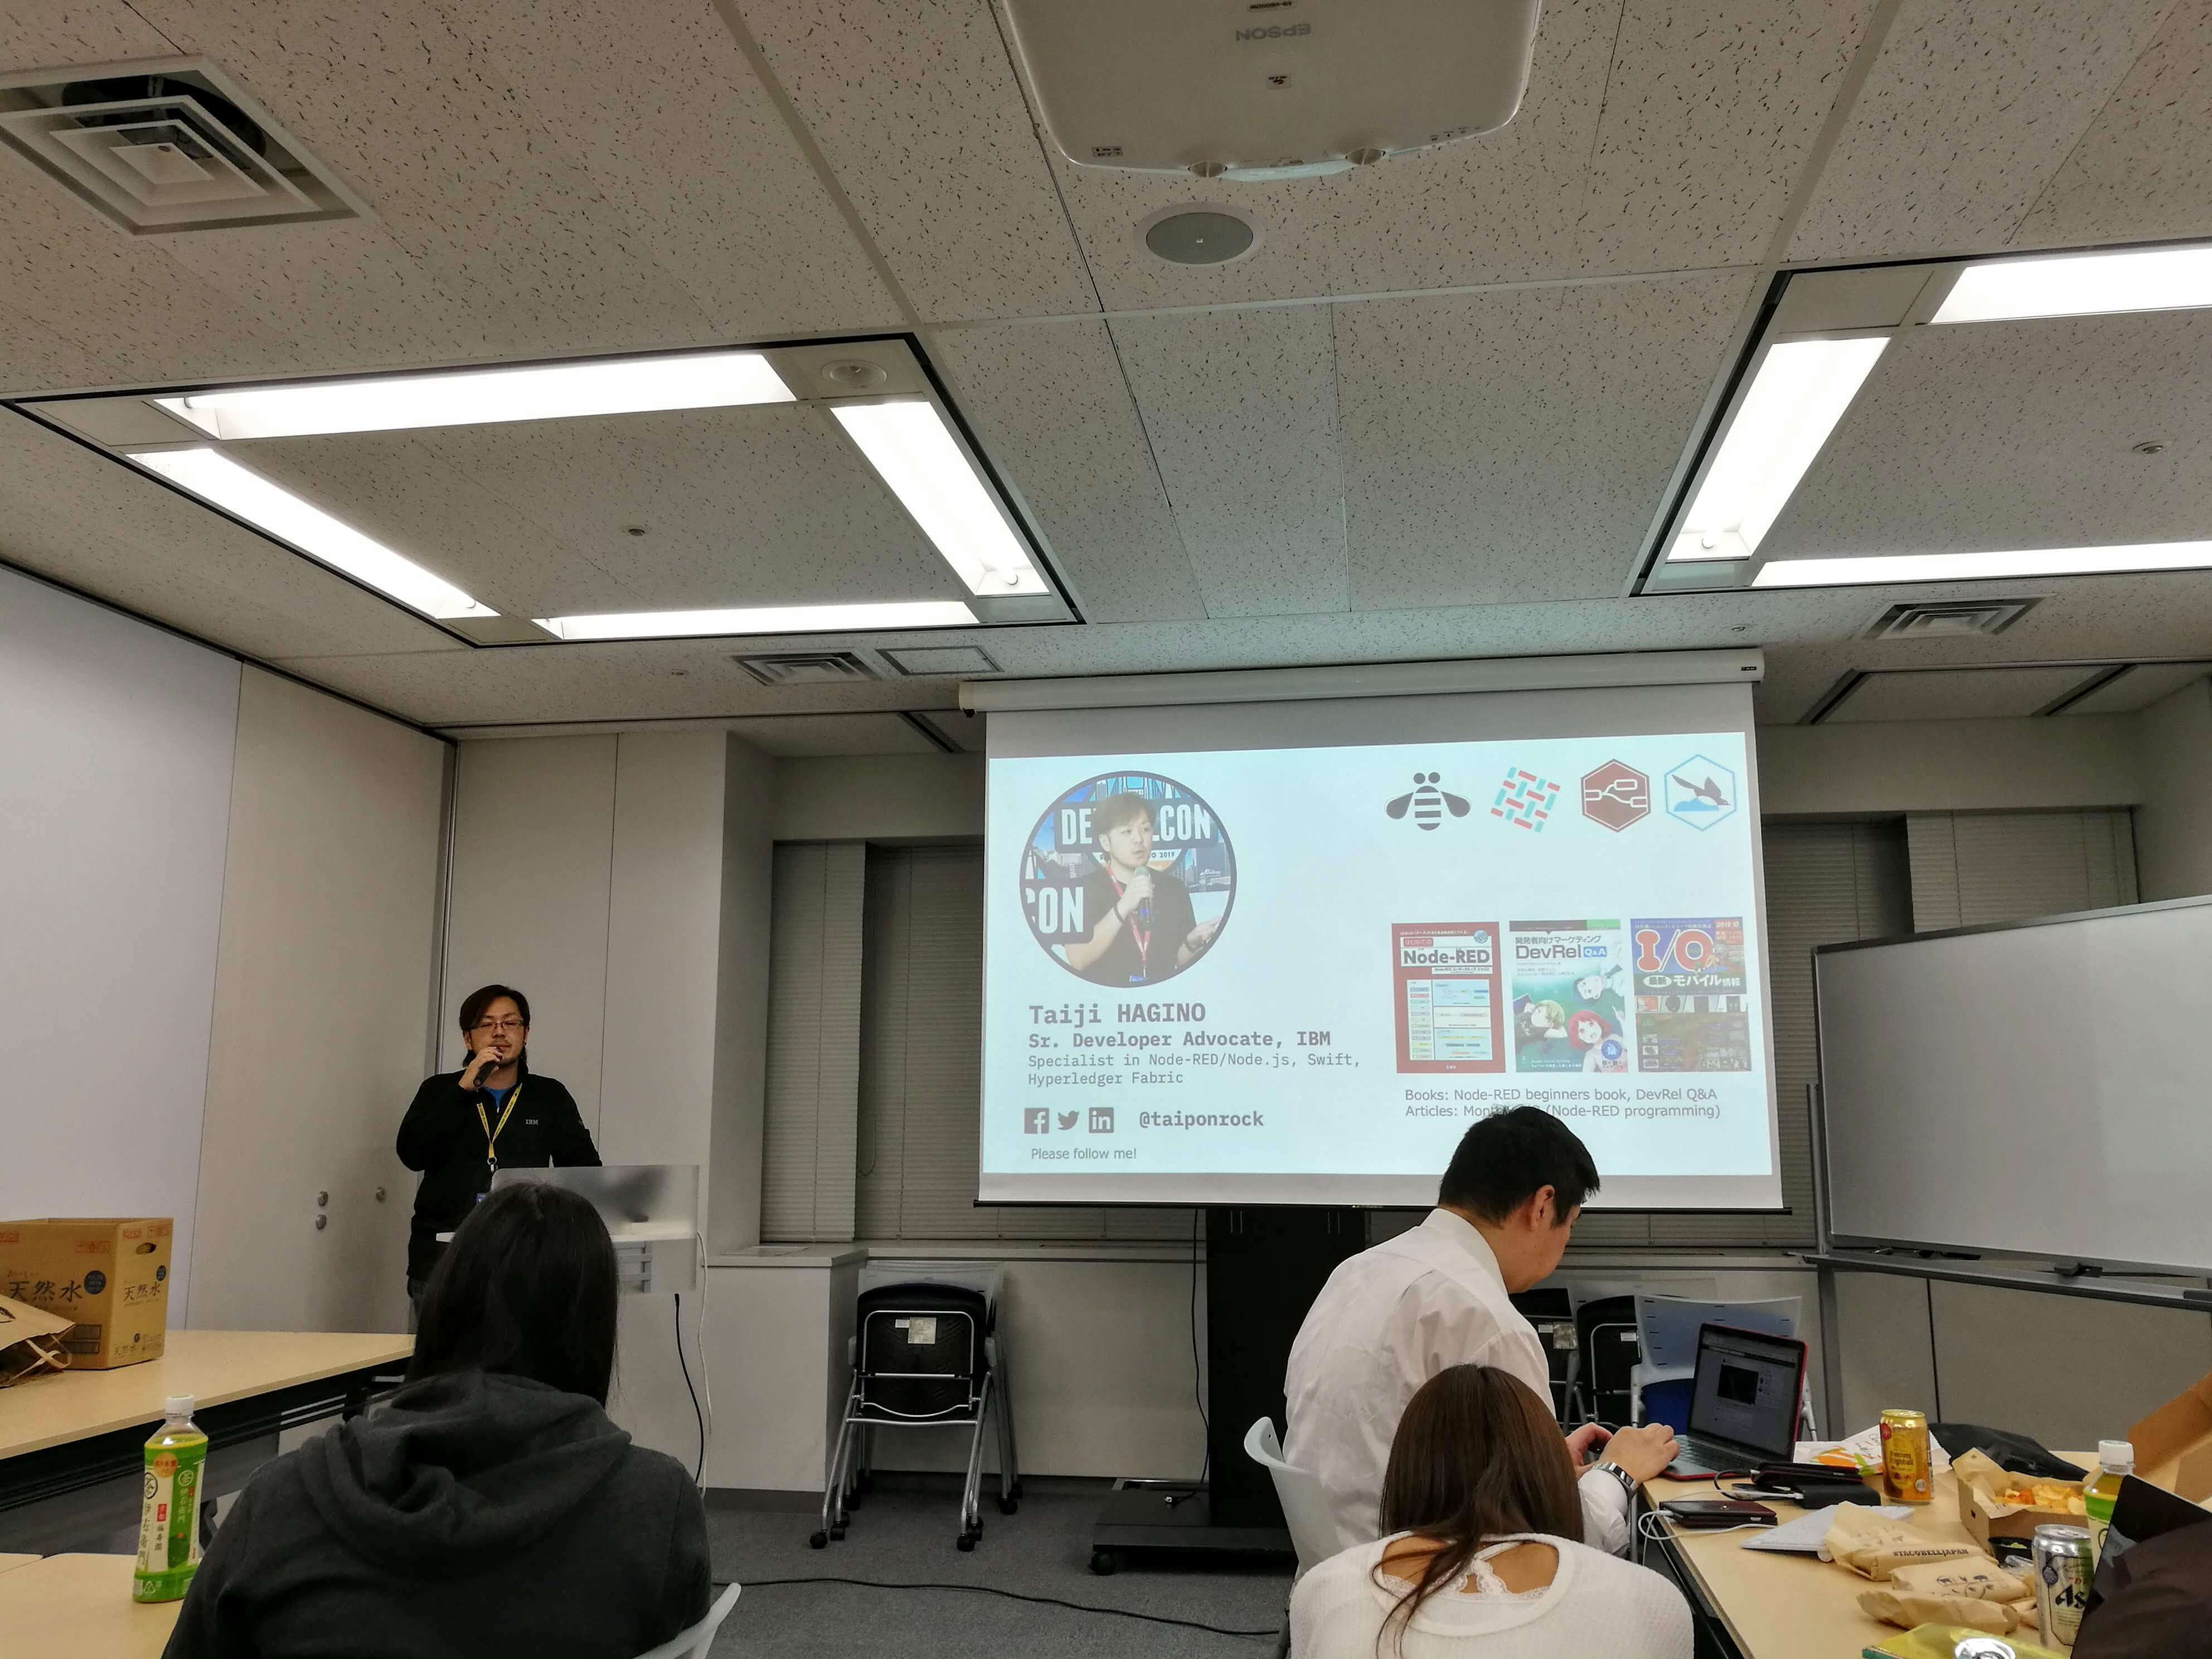 Taiji HAGINO from IBM presenting